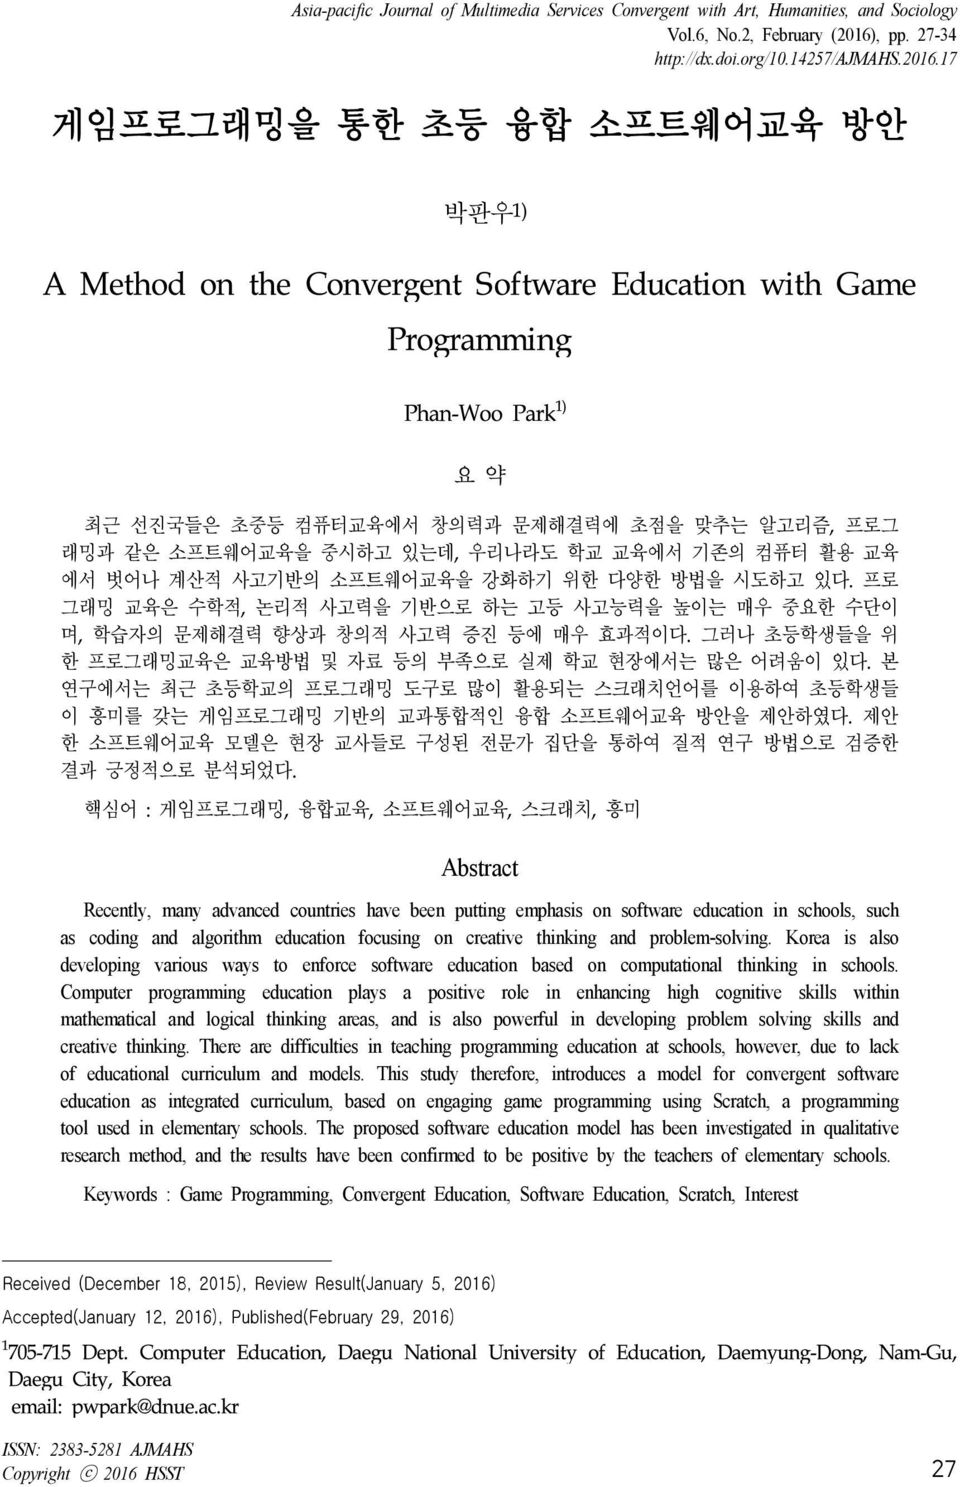 17 게임프로그래밍을 통한 초등 융합 소프트웨어교육 방안 박판우 1) A Method on the Convergent Software Education with Game Phan-Woo Park 1) 요 약 최근 선진국들은 초중등 컴퓨터교육에서 창의력과 문제해결력에 초점을 맞추는 알고리즘, 프로그 래밍과 같은 소프트웨어교육을 중시하고 있는데, 우리나라도